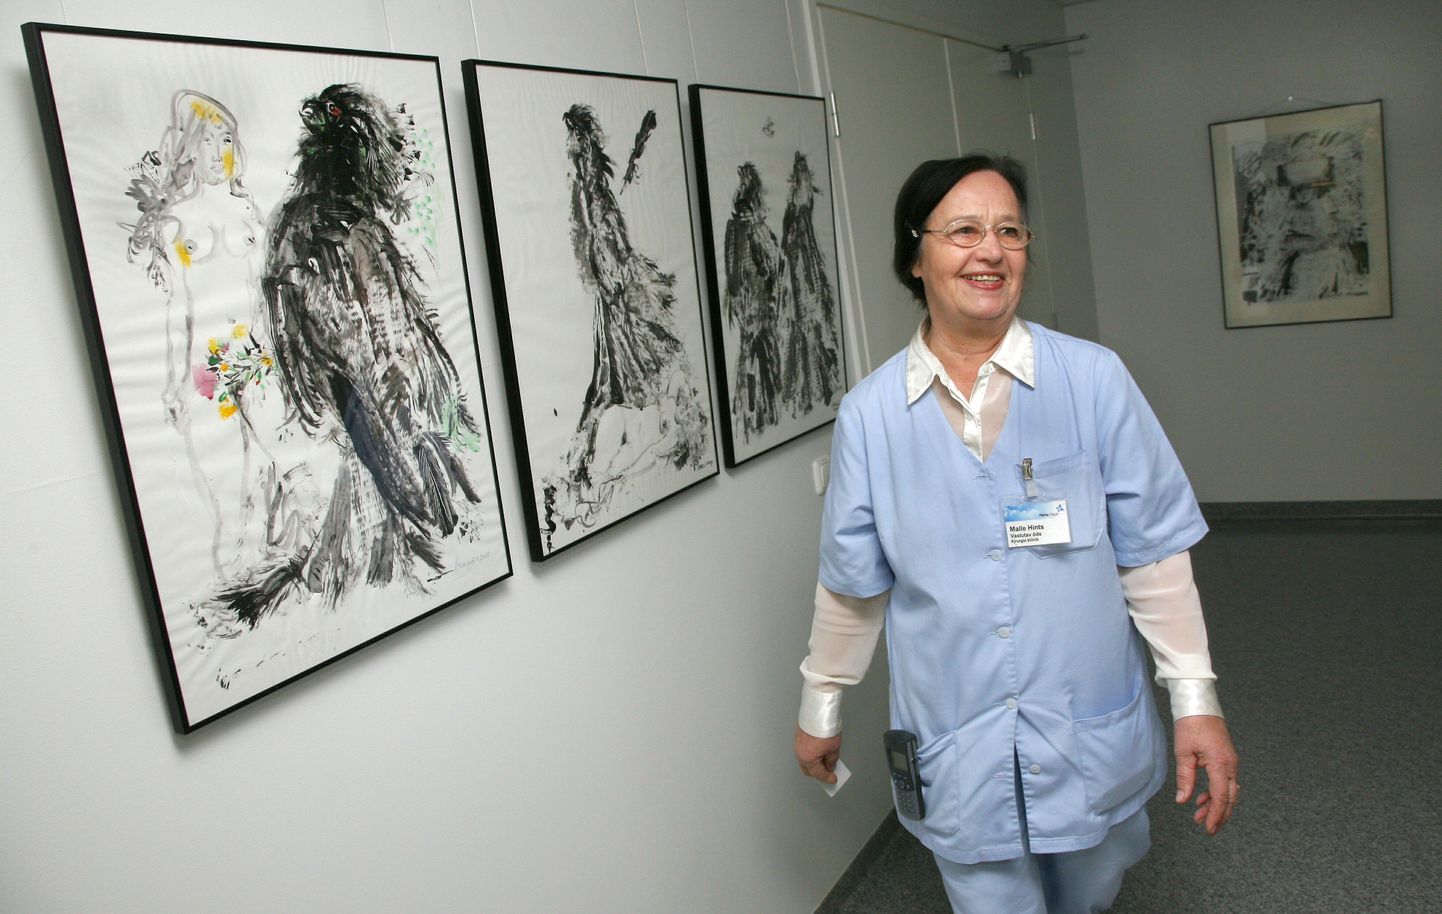 "Evald Okas kujutab mehi mustade lindudena," selgitab haiglaõest galerist Malle Hints oma lemmikkunstniku taieste ees seistes.